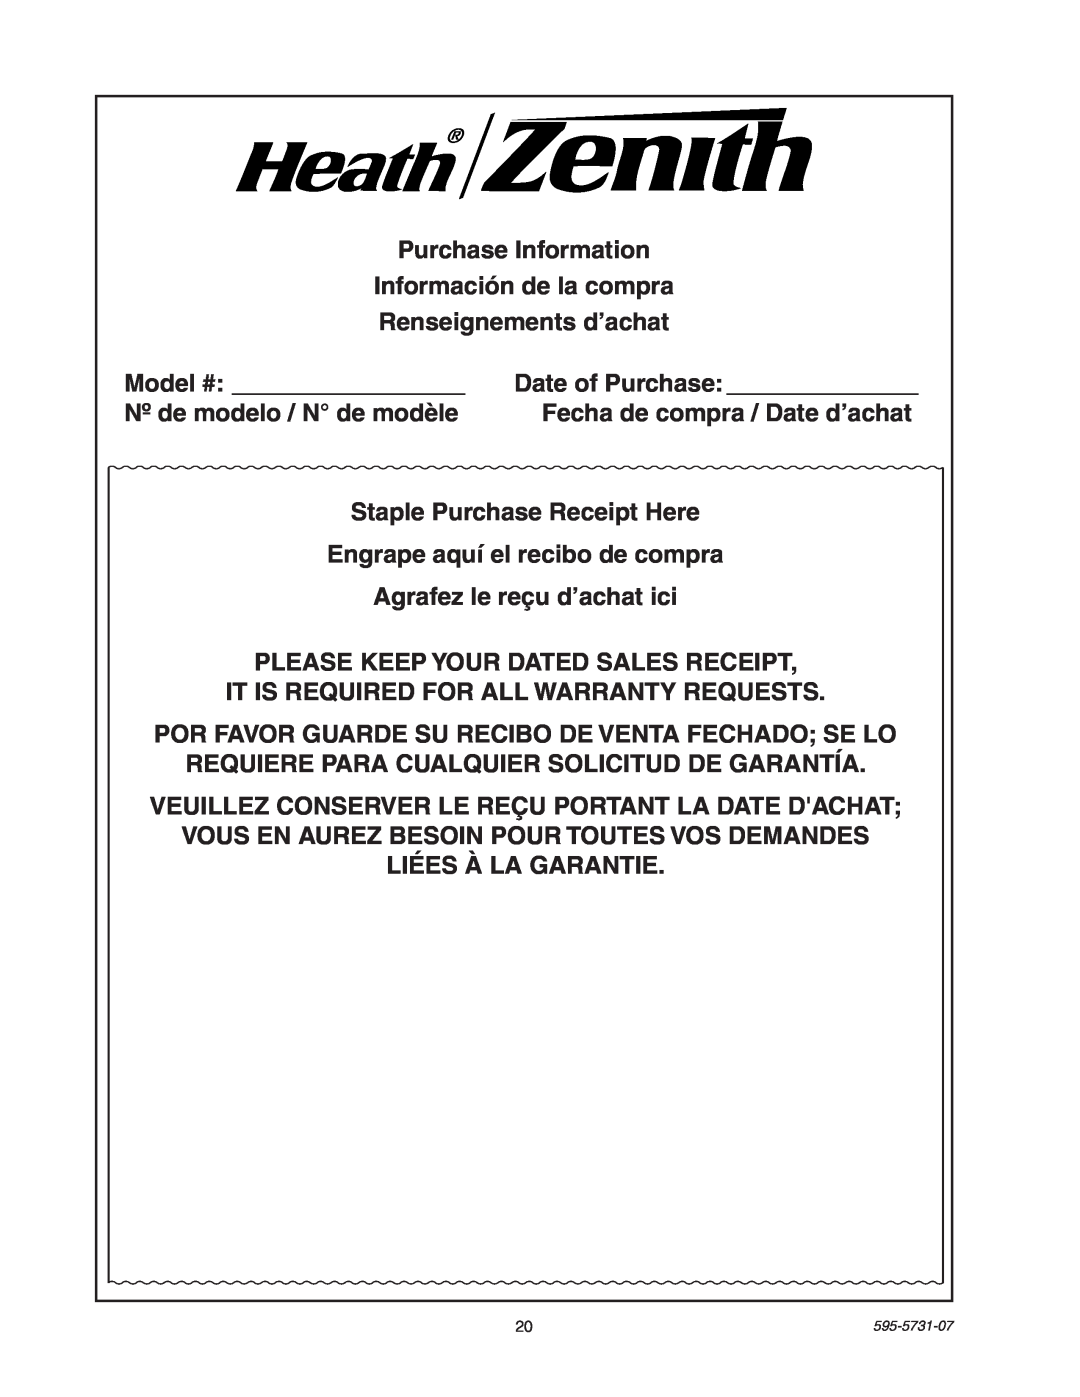 Heath Zenith 5318 manual Purchase Information Información de la compra 